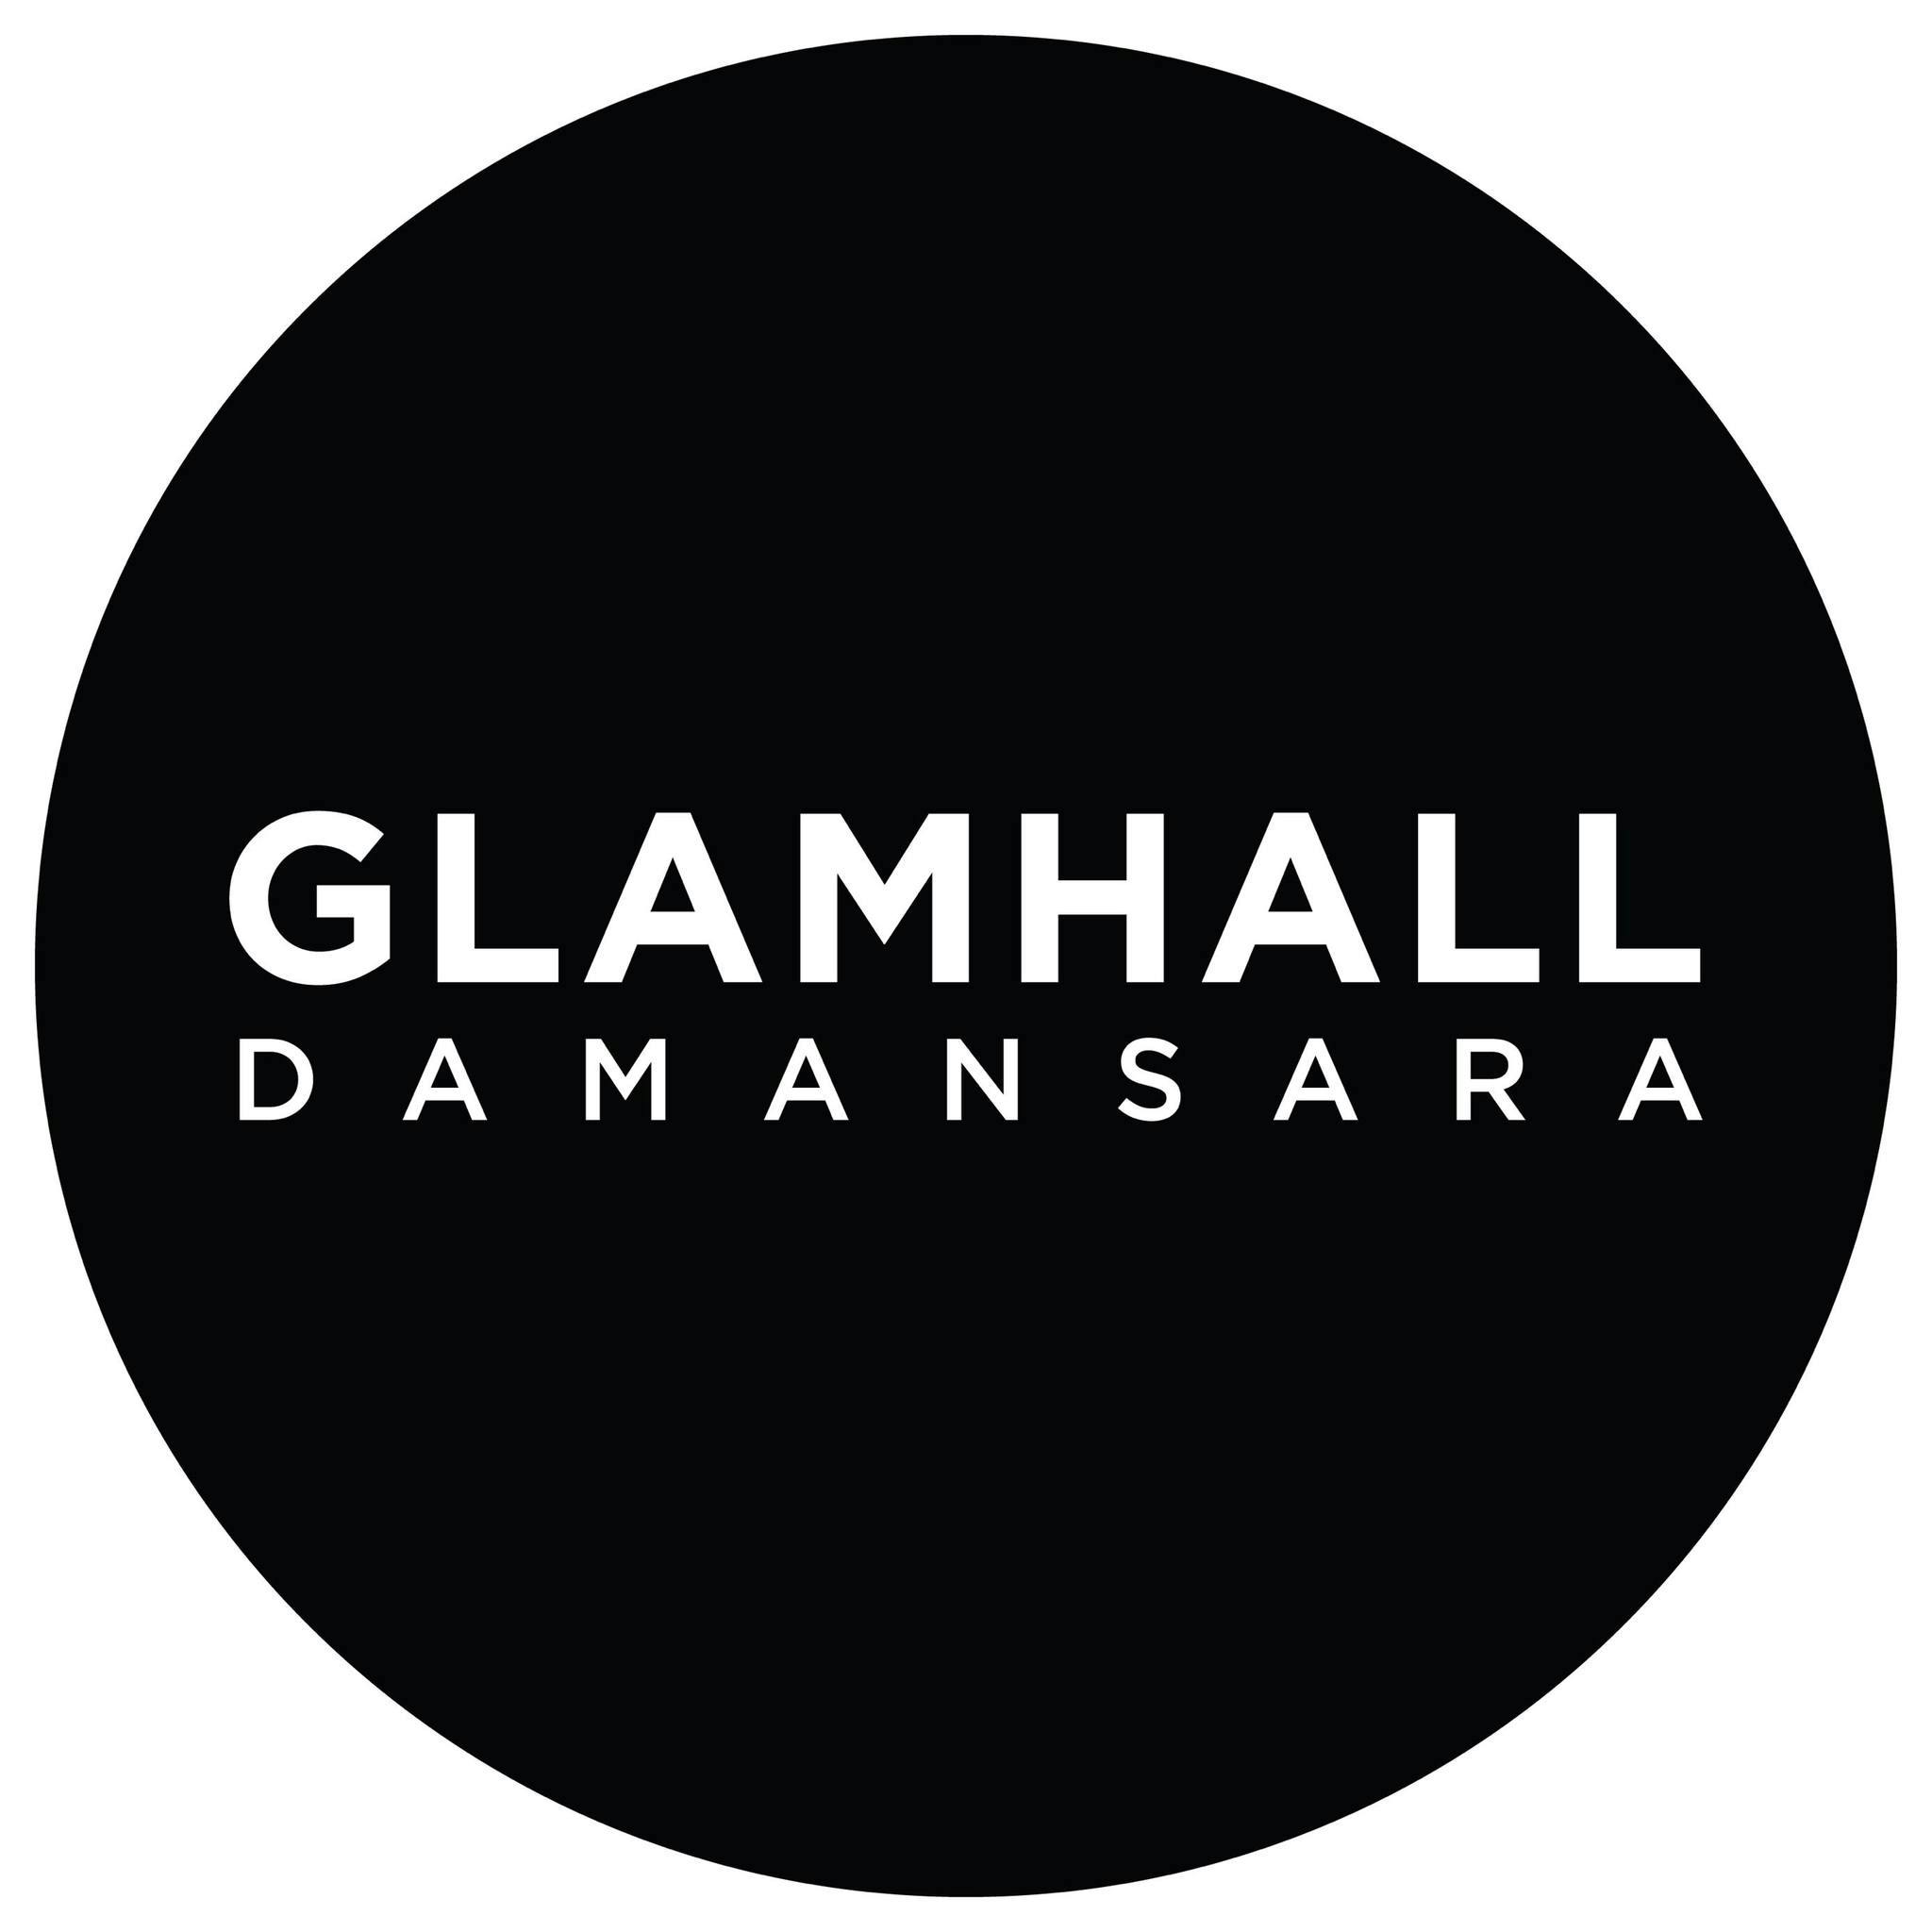 GLAMHALL DAMANSARA logo